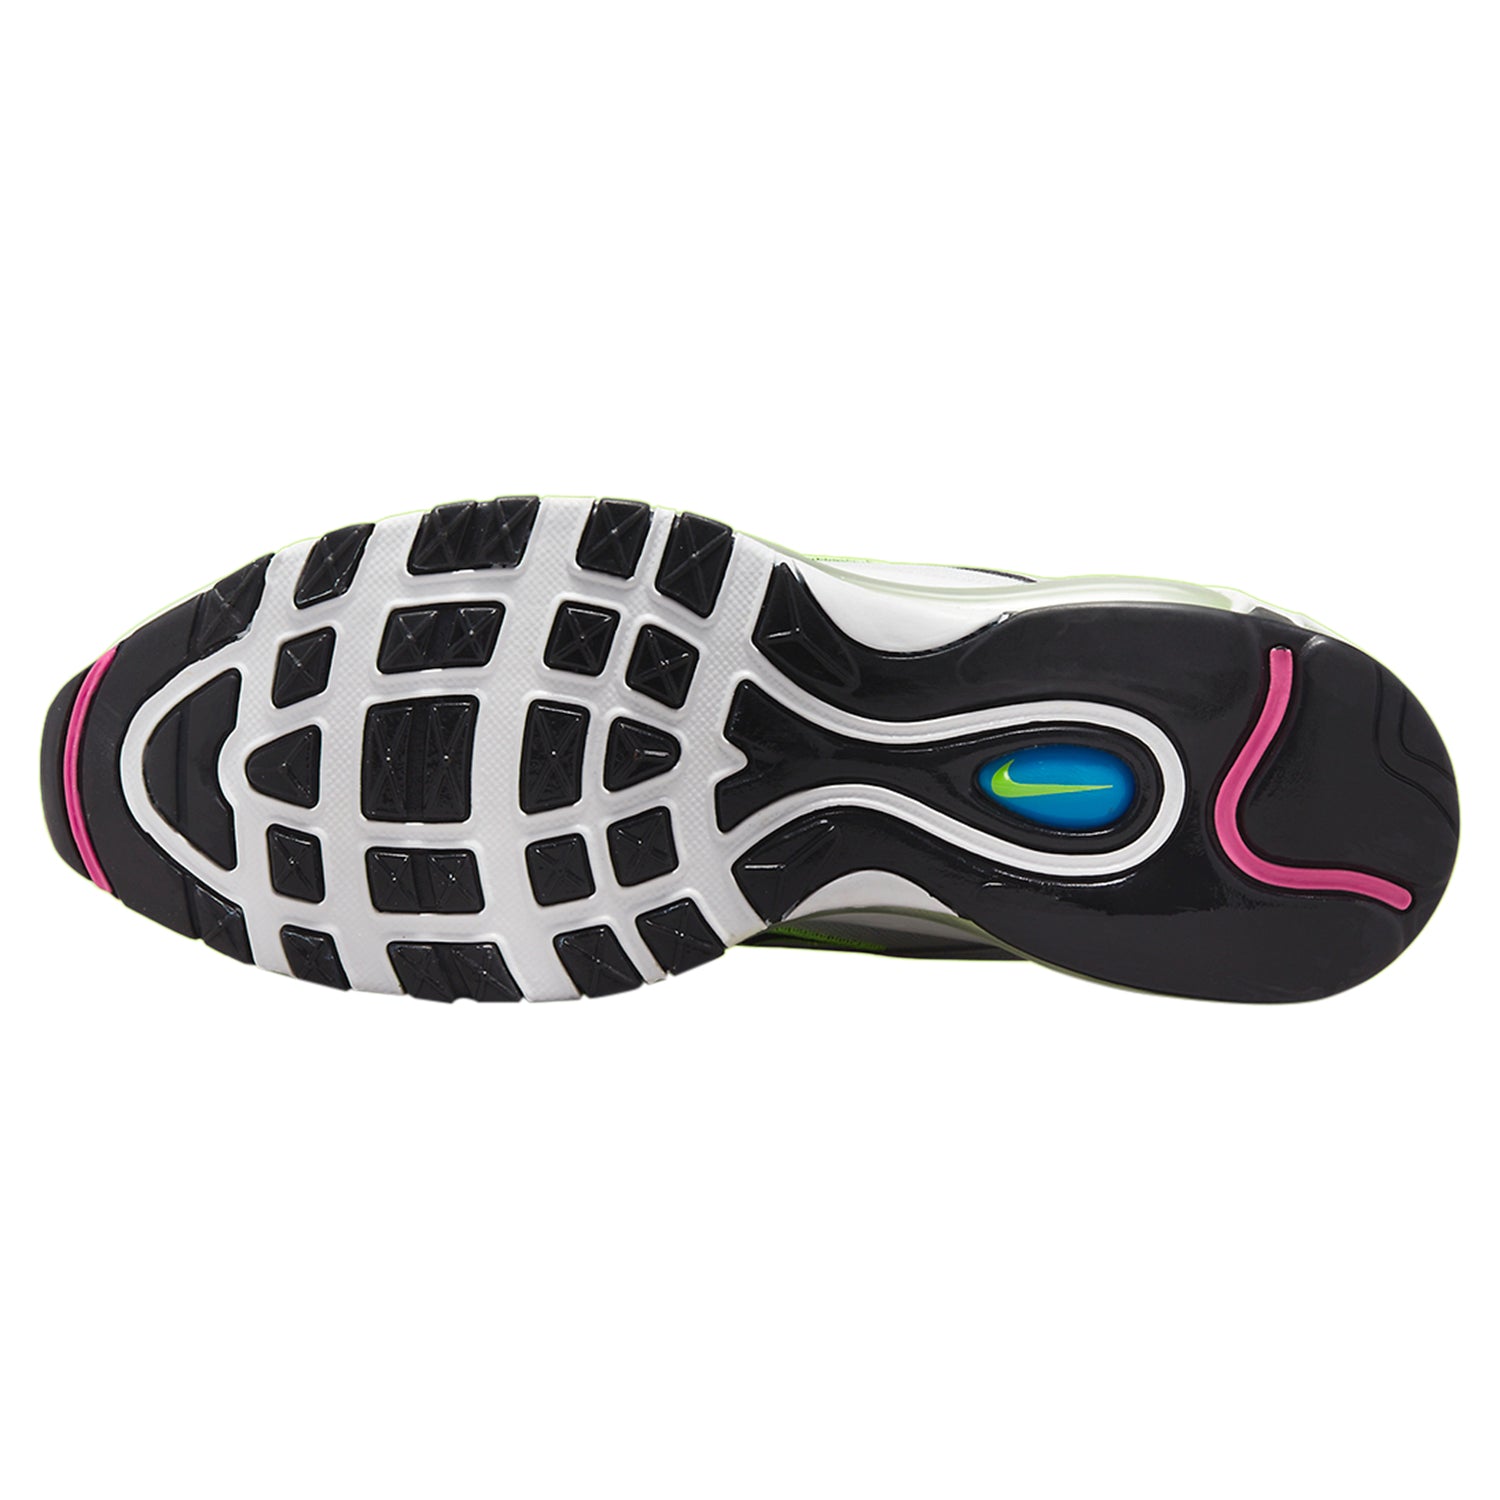 Nike Air Max 97 Neon Black White